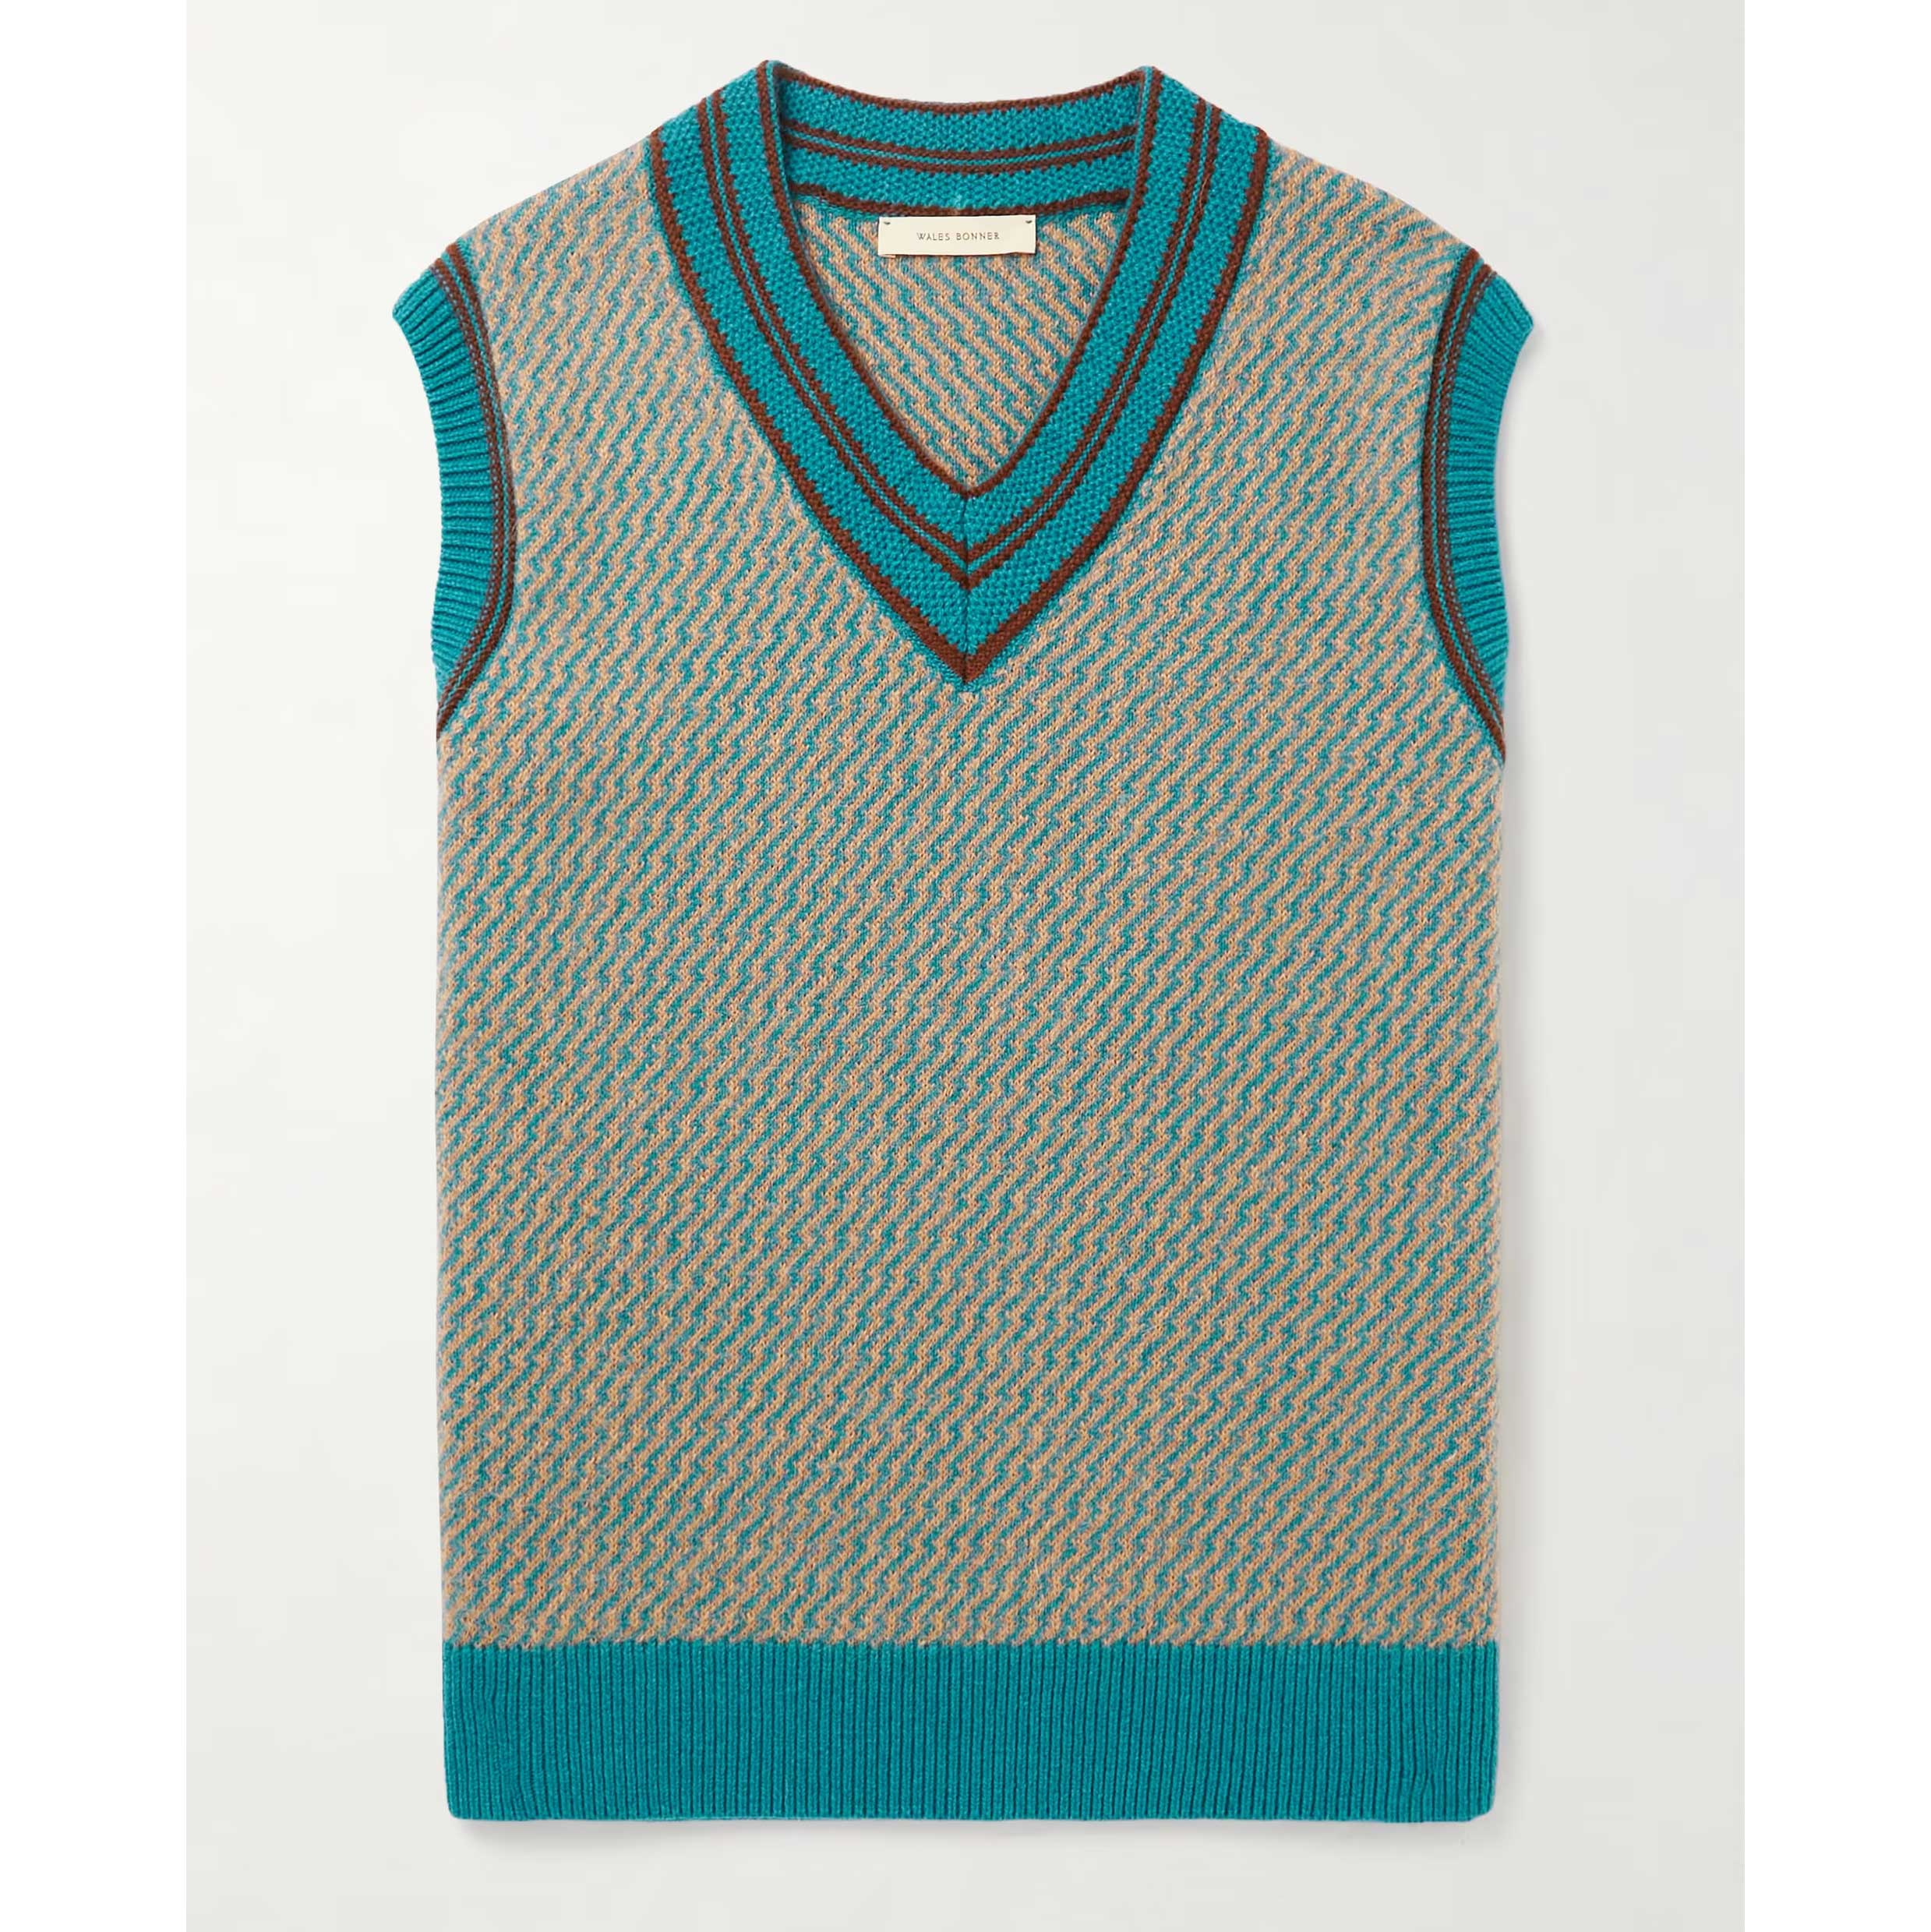 WALES BONNER Chorus Cashmere-Blend Jacquard Sweater Vest